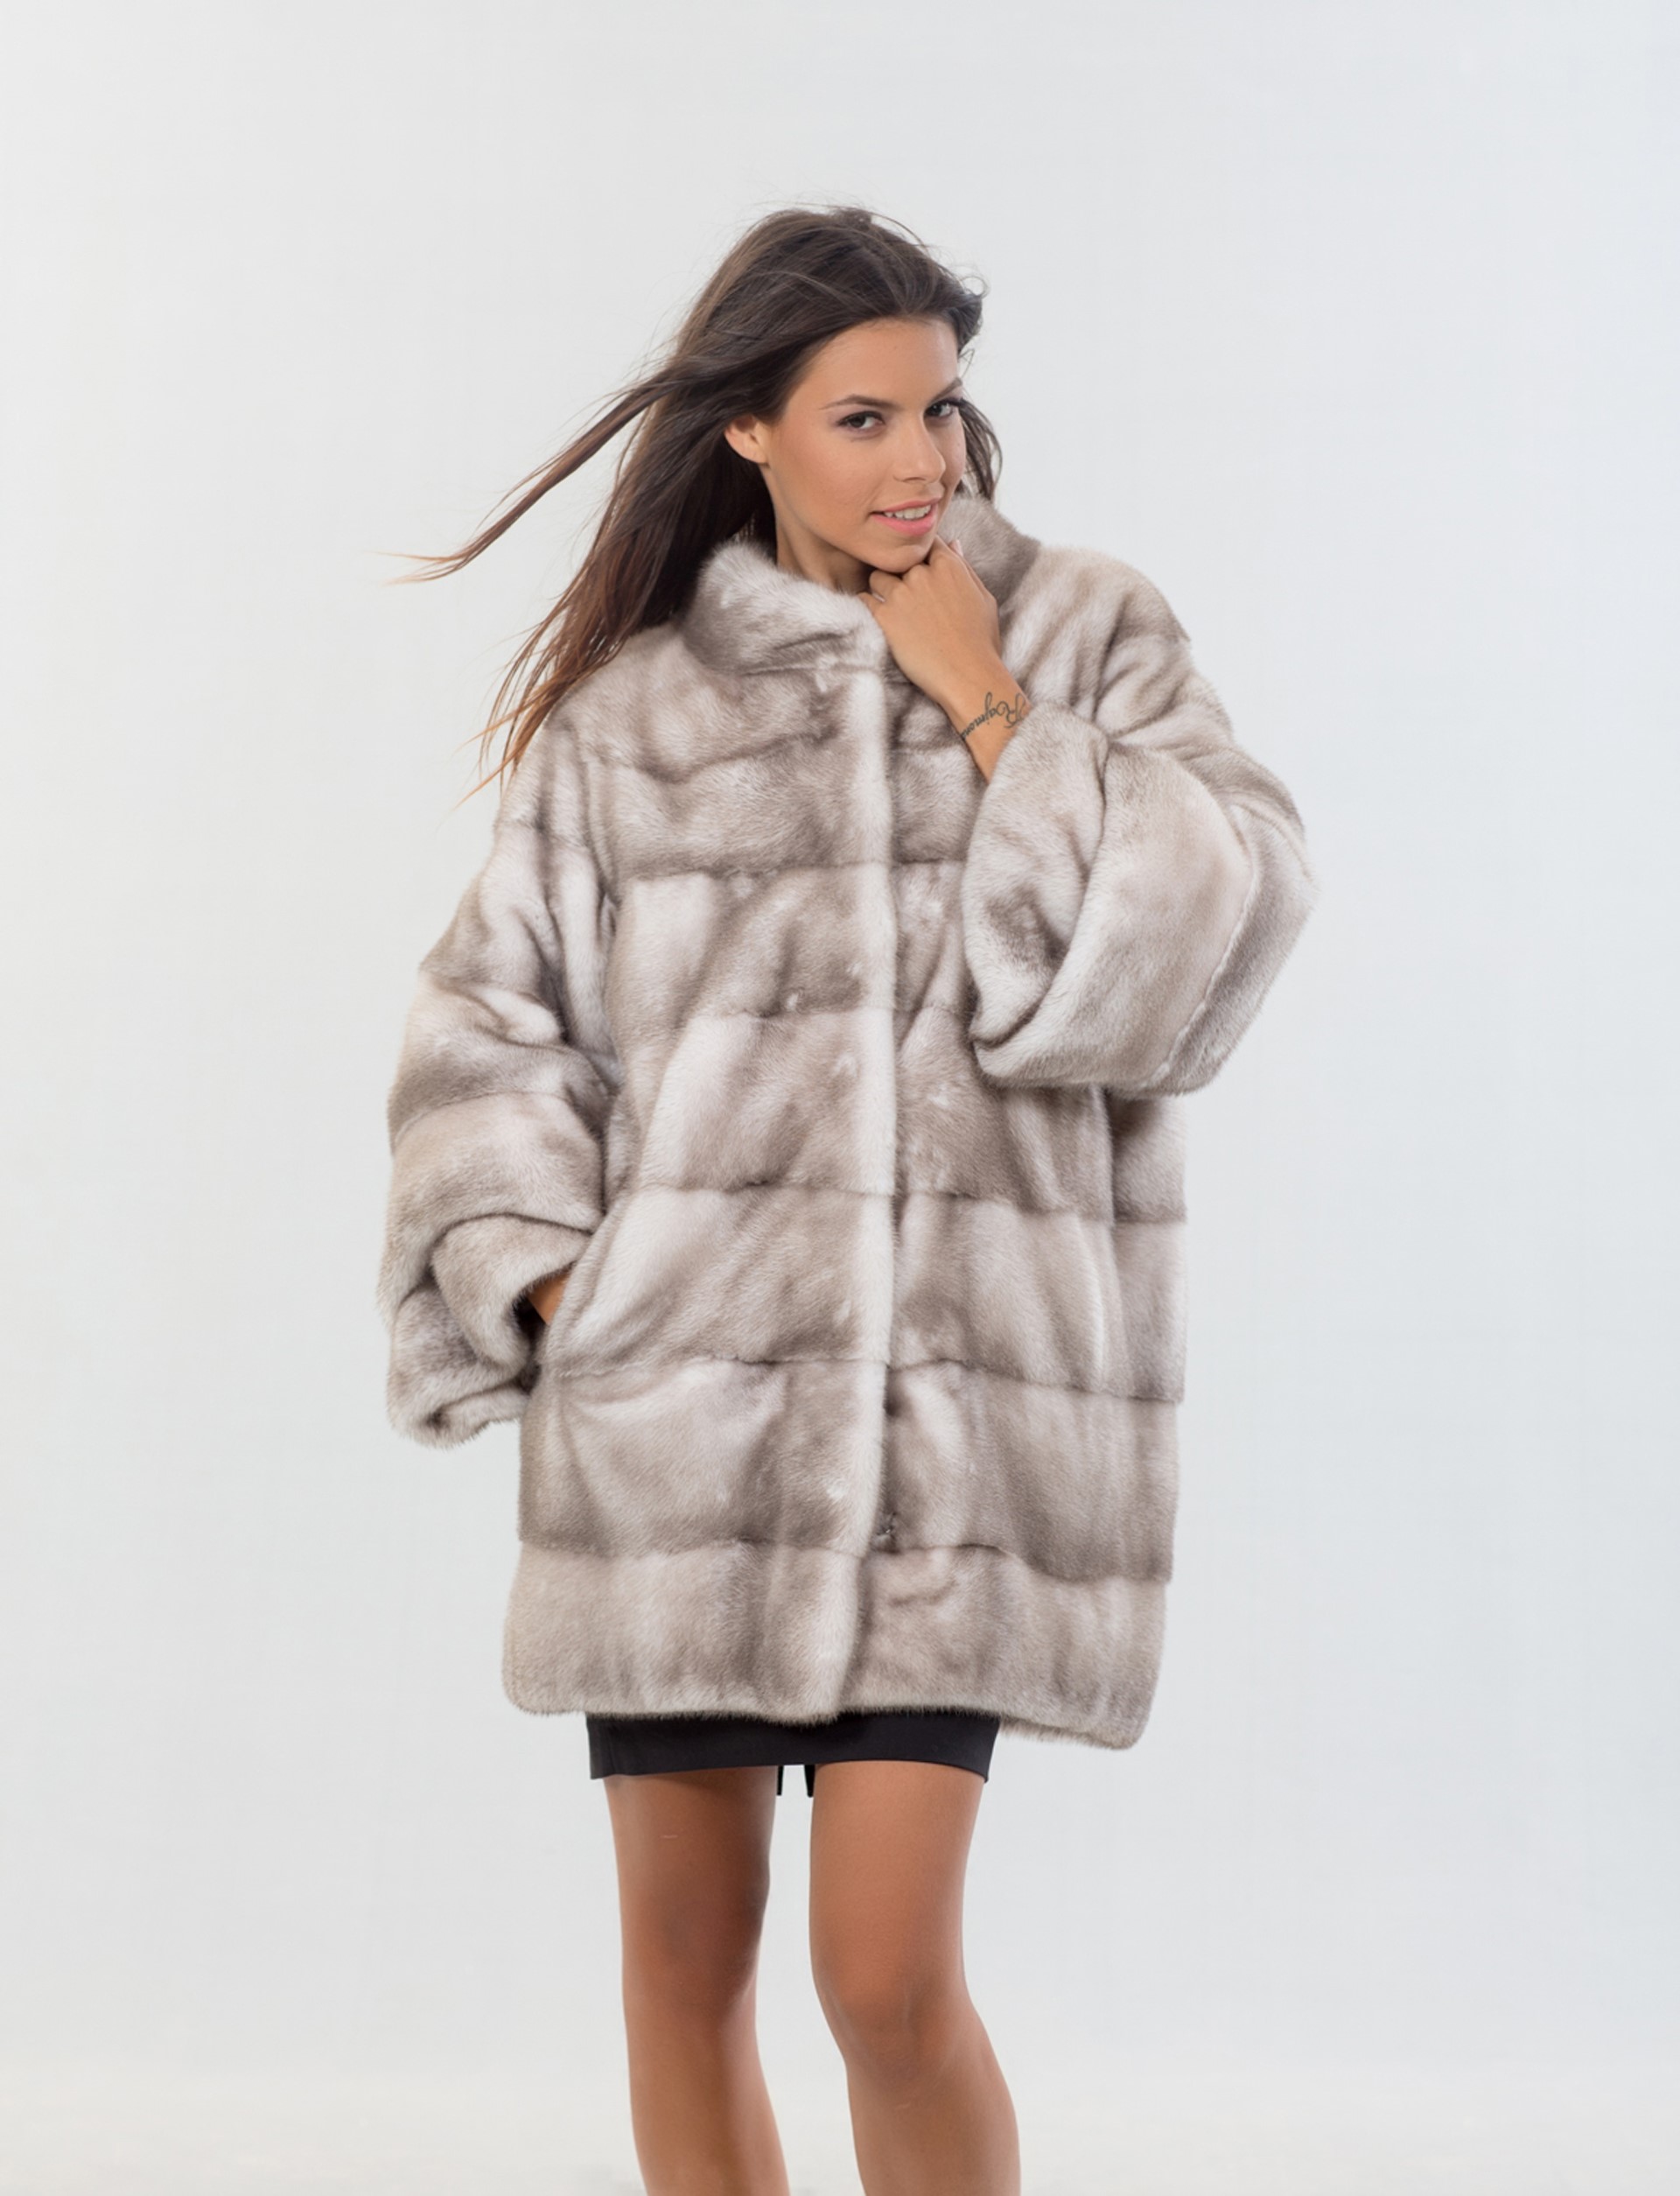 Silver Blue Nafa Mink Fur Coat. 100% Real Fur Coats and Accessories.